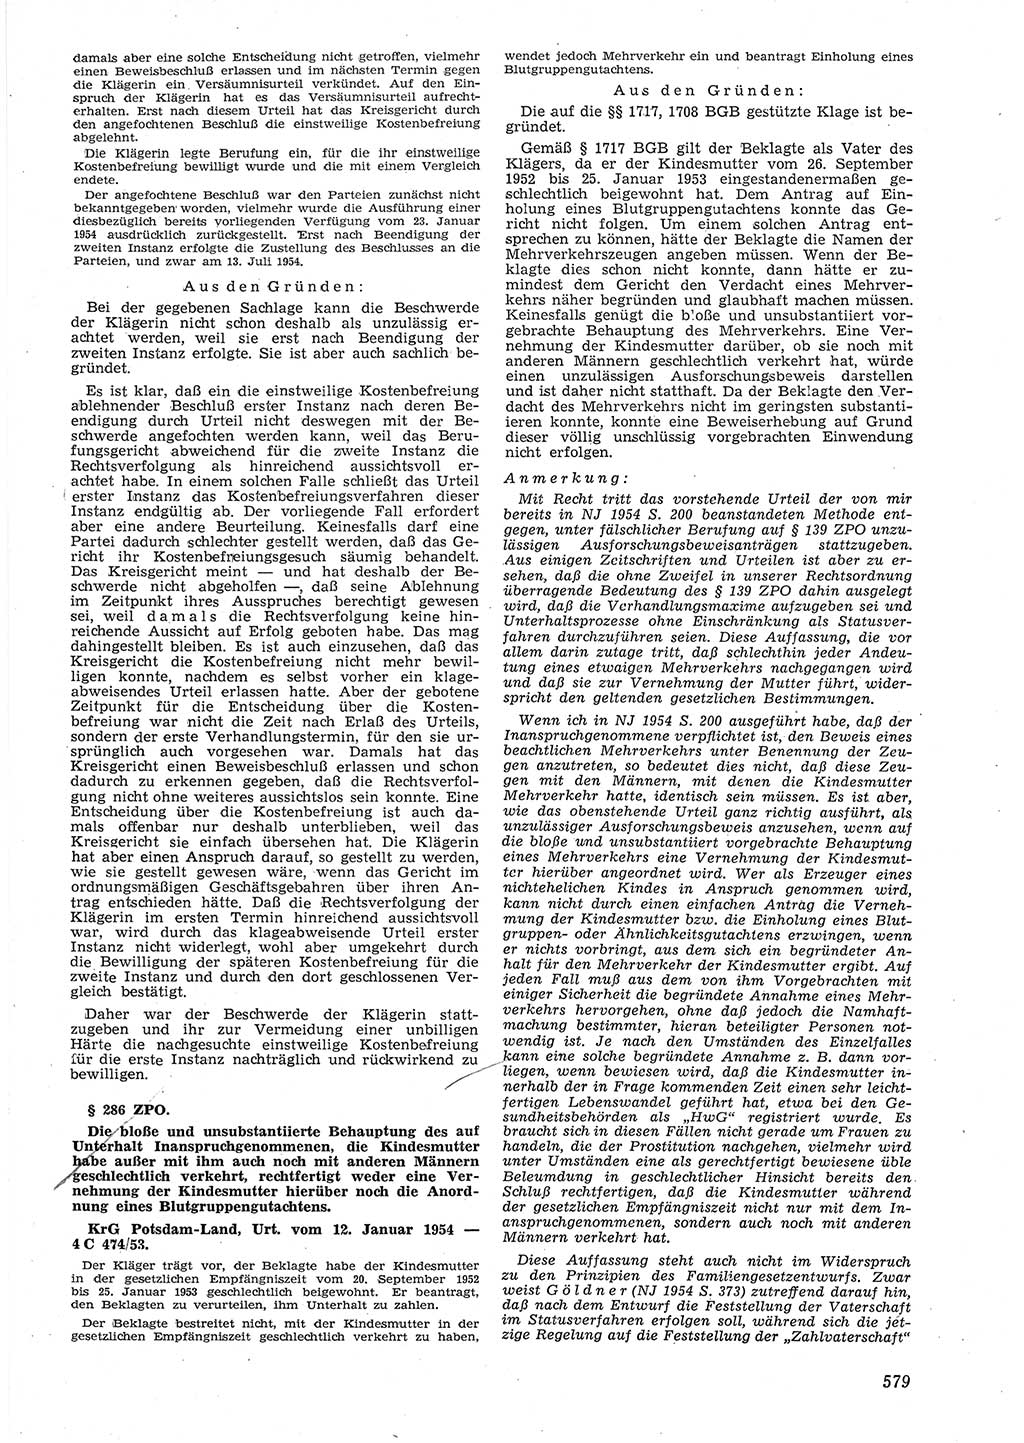 Neue Justiz (NJ), Zeitschrift für Recht und Rechtswissenschaft [Deutsche Demokratische Republik (DDR)], 8. Jahrgang 1954, Seite 579 (NJ DDR 1954, S. 579)